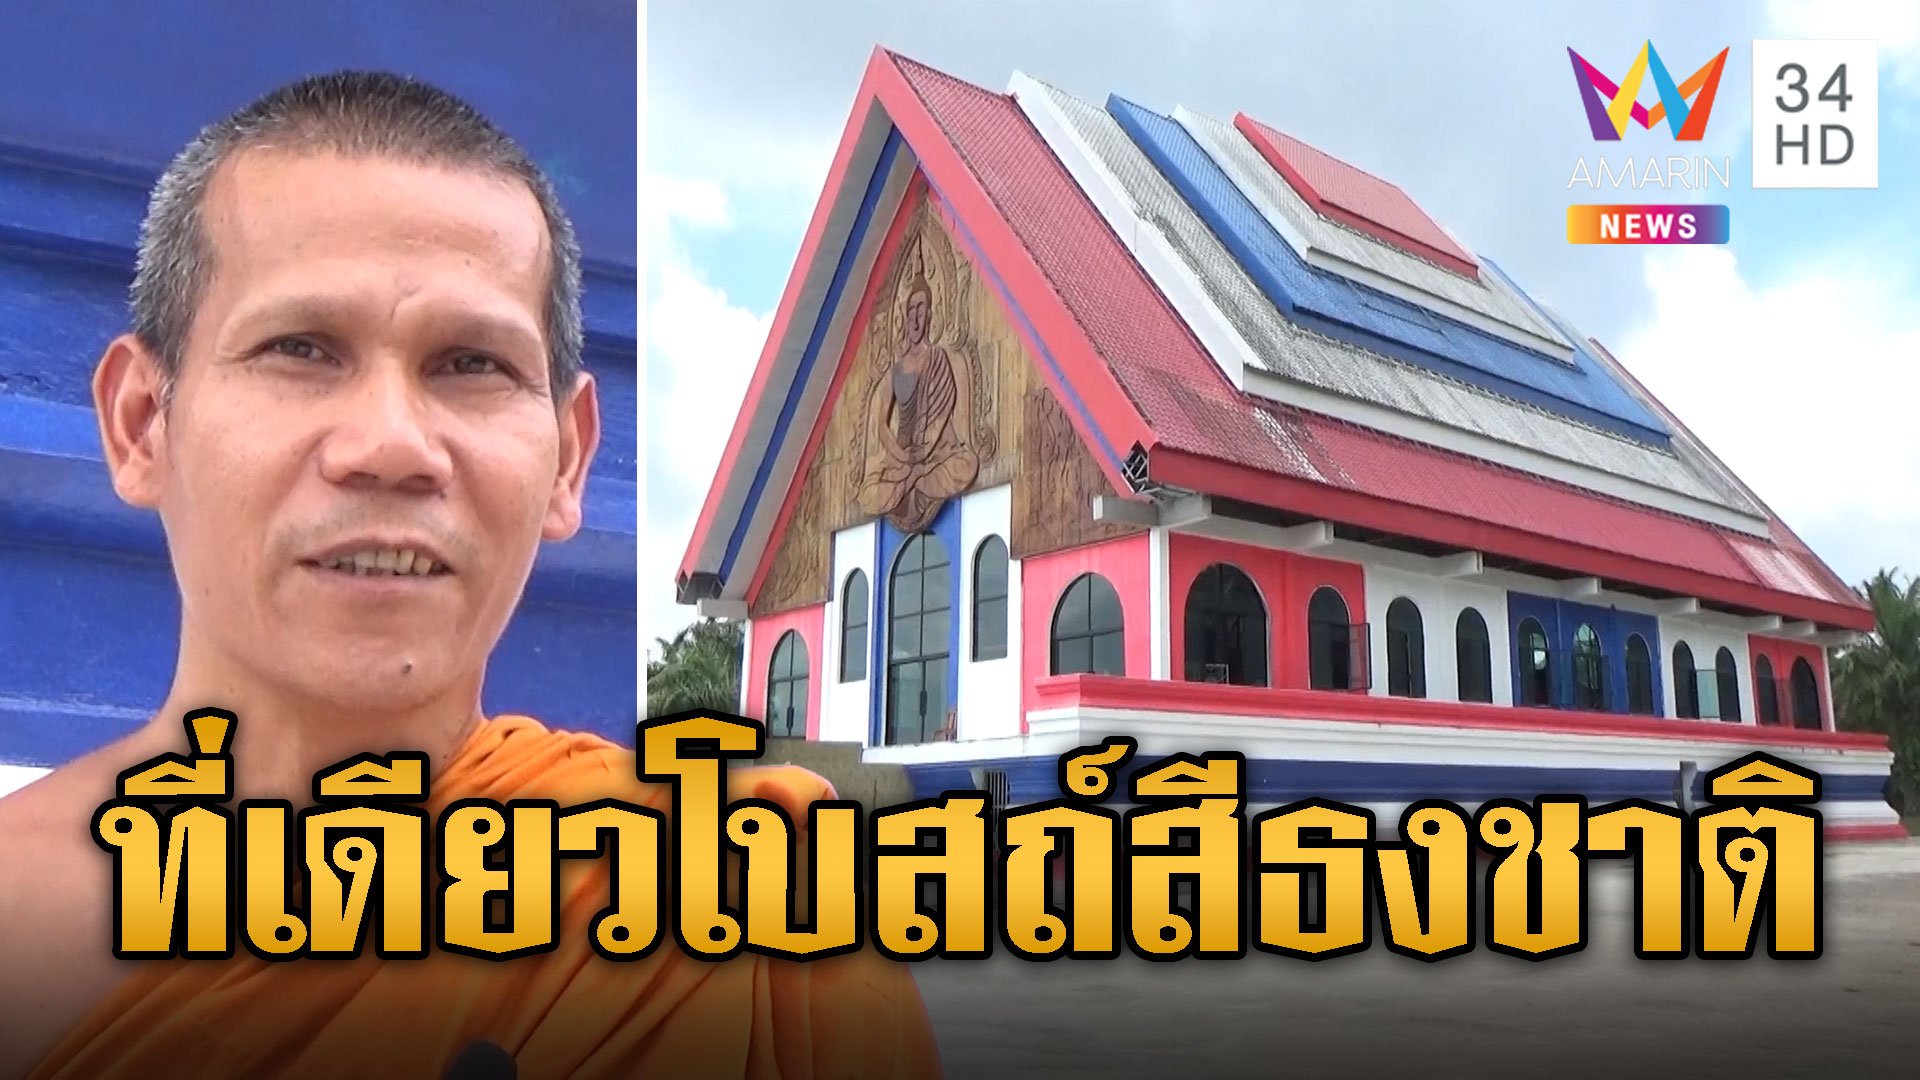 หนึ่งเดียวในไทย โบสถ์สีธงชาติ แถมมี 'พระปางมารสะดุ้ง' องค์ใหญ่สุดของใต้ | ข่าวอรุณอมรินทร์ | 22 พ.ค. 67 | AMARIN TVHD34